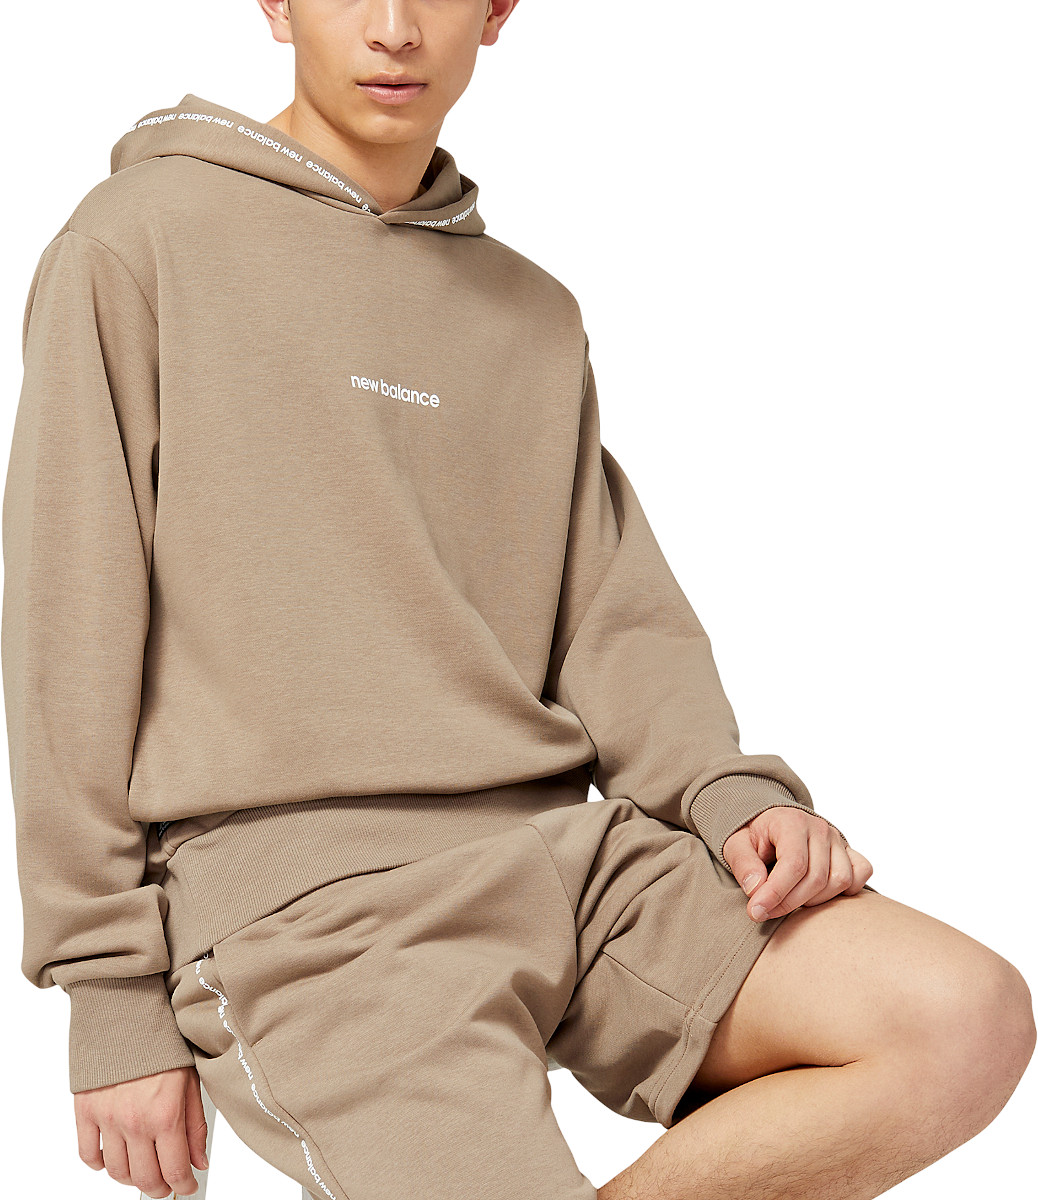 Sweatshirt com capuz New Balance NB Essentials Fleece Hoodie